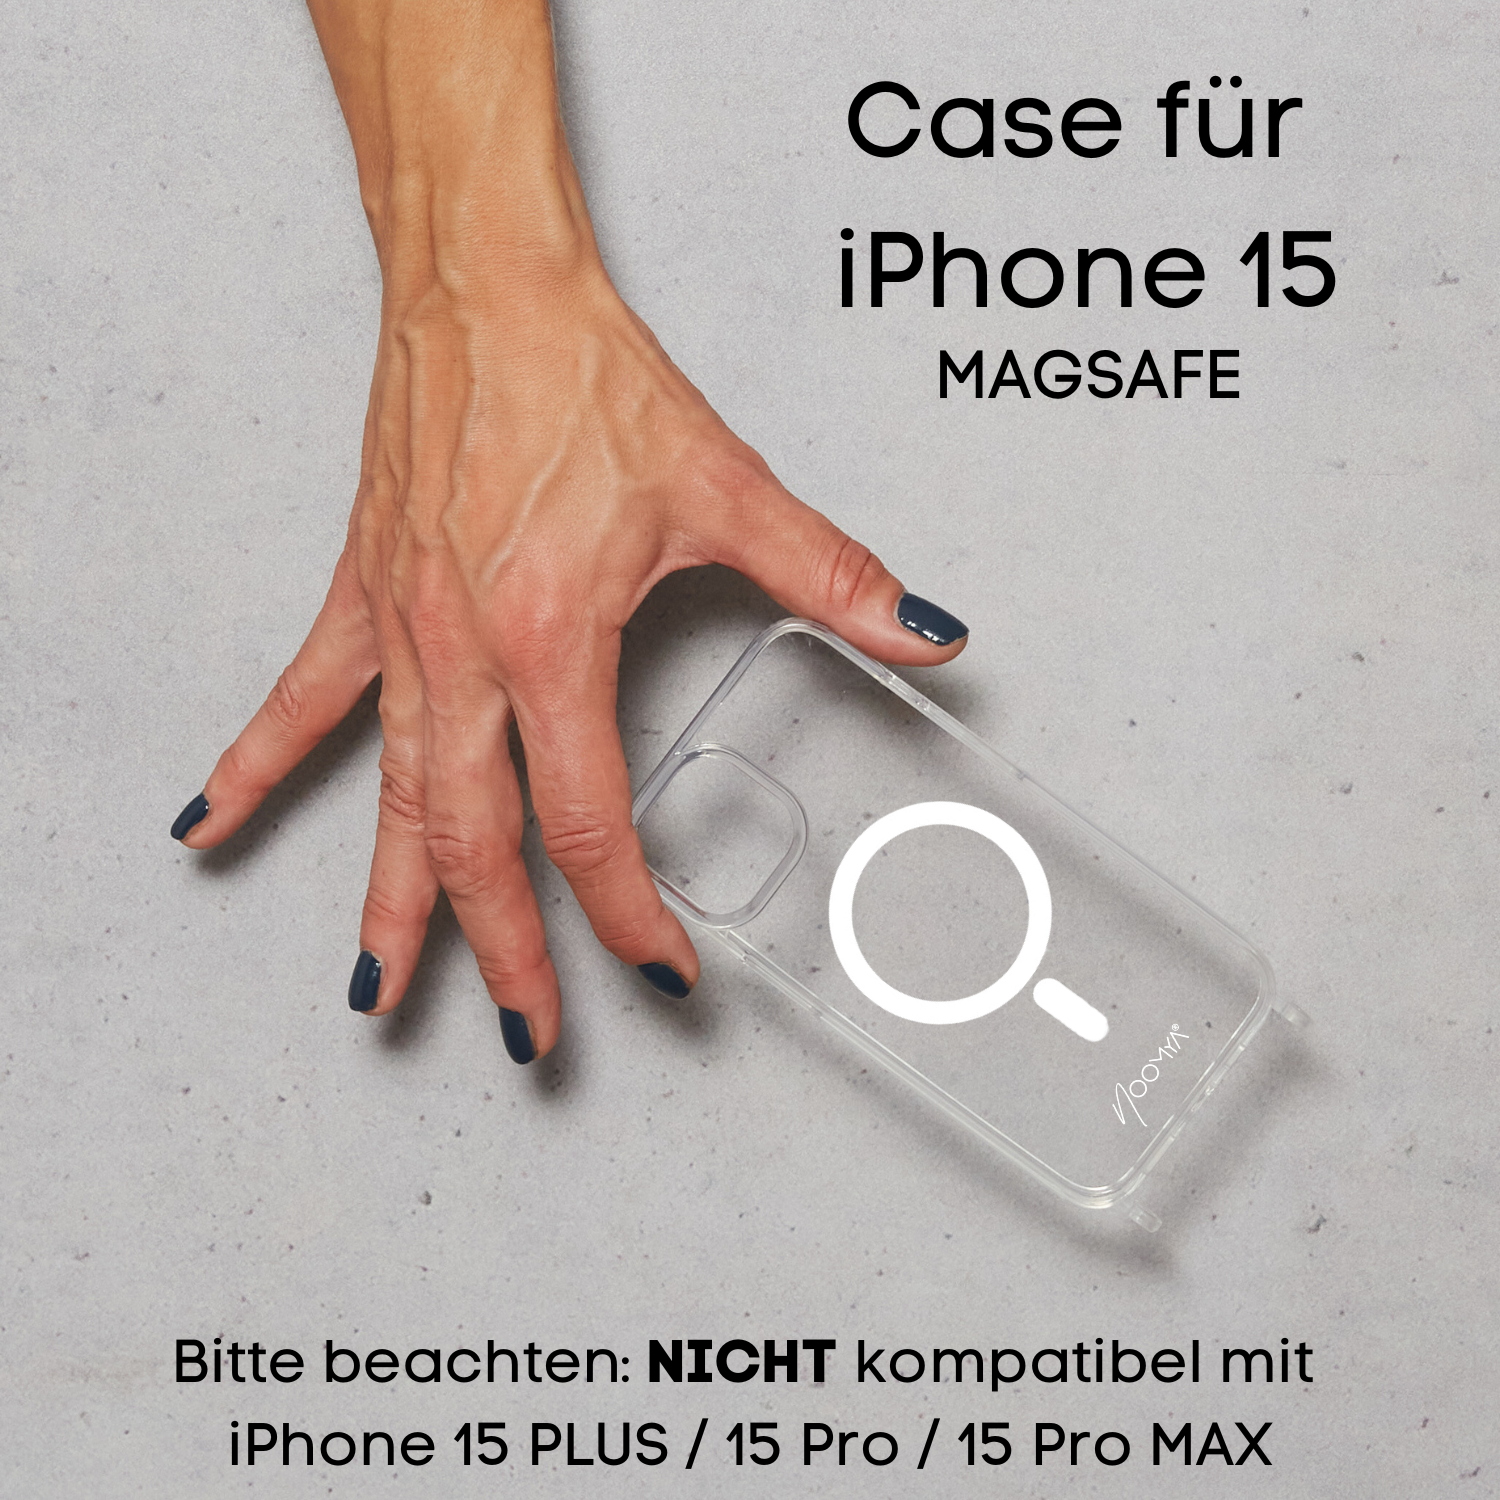 Handyhülle MagSafe mit Ösen für Handyketten - iPhone 15er Modelle